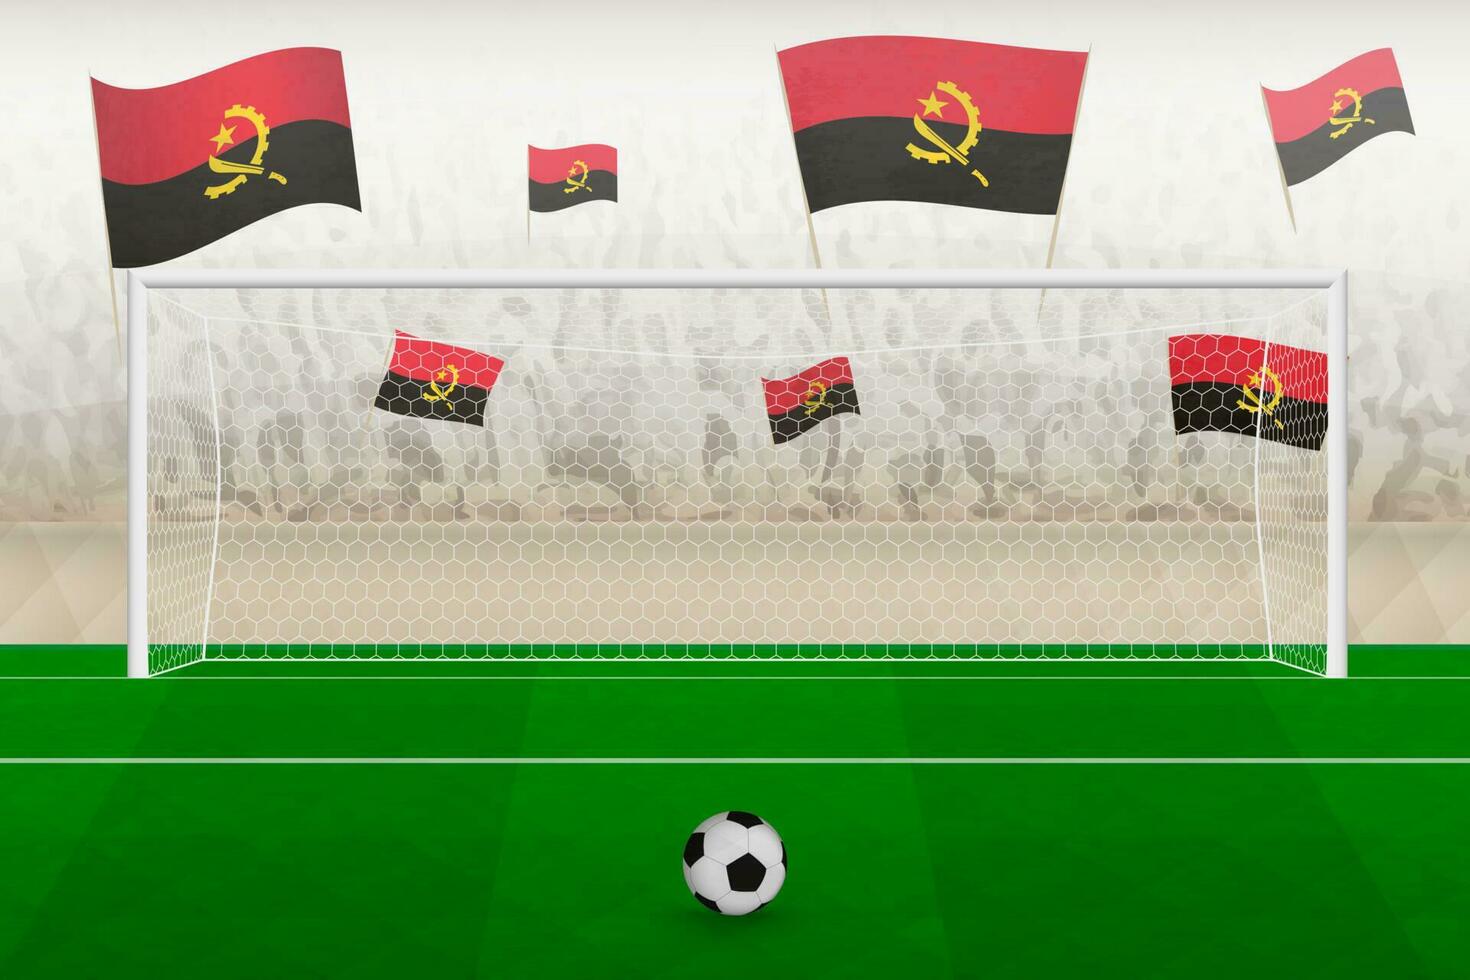 angola Football équipe Ventilateurs avec drapeaux de angola applaudissement sur stade, peine donner un coup concept dans une football correspondre. vecteur